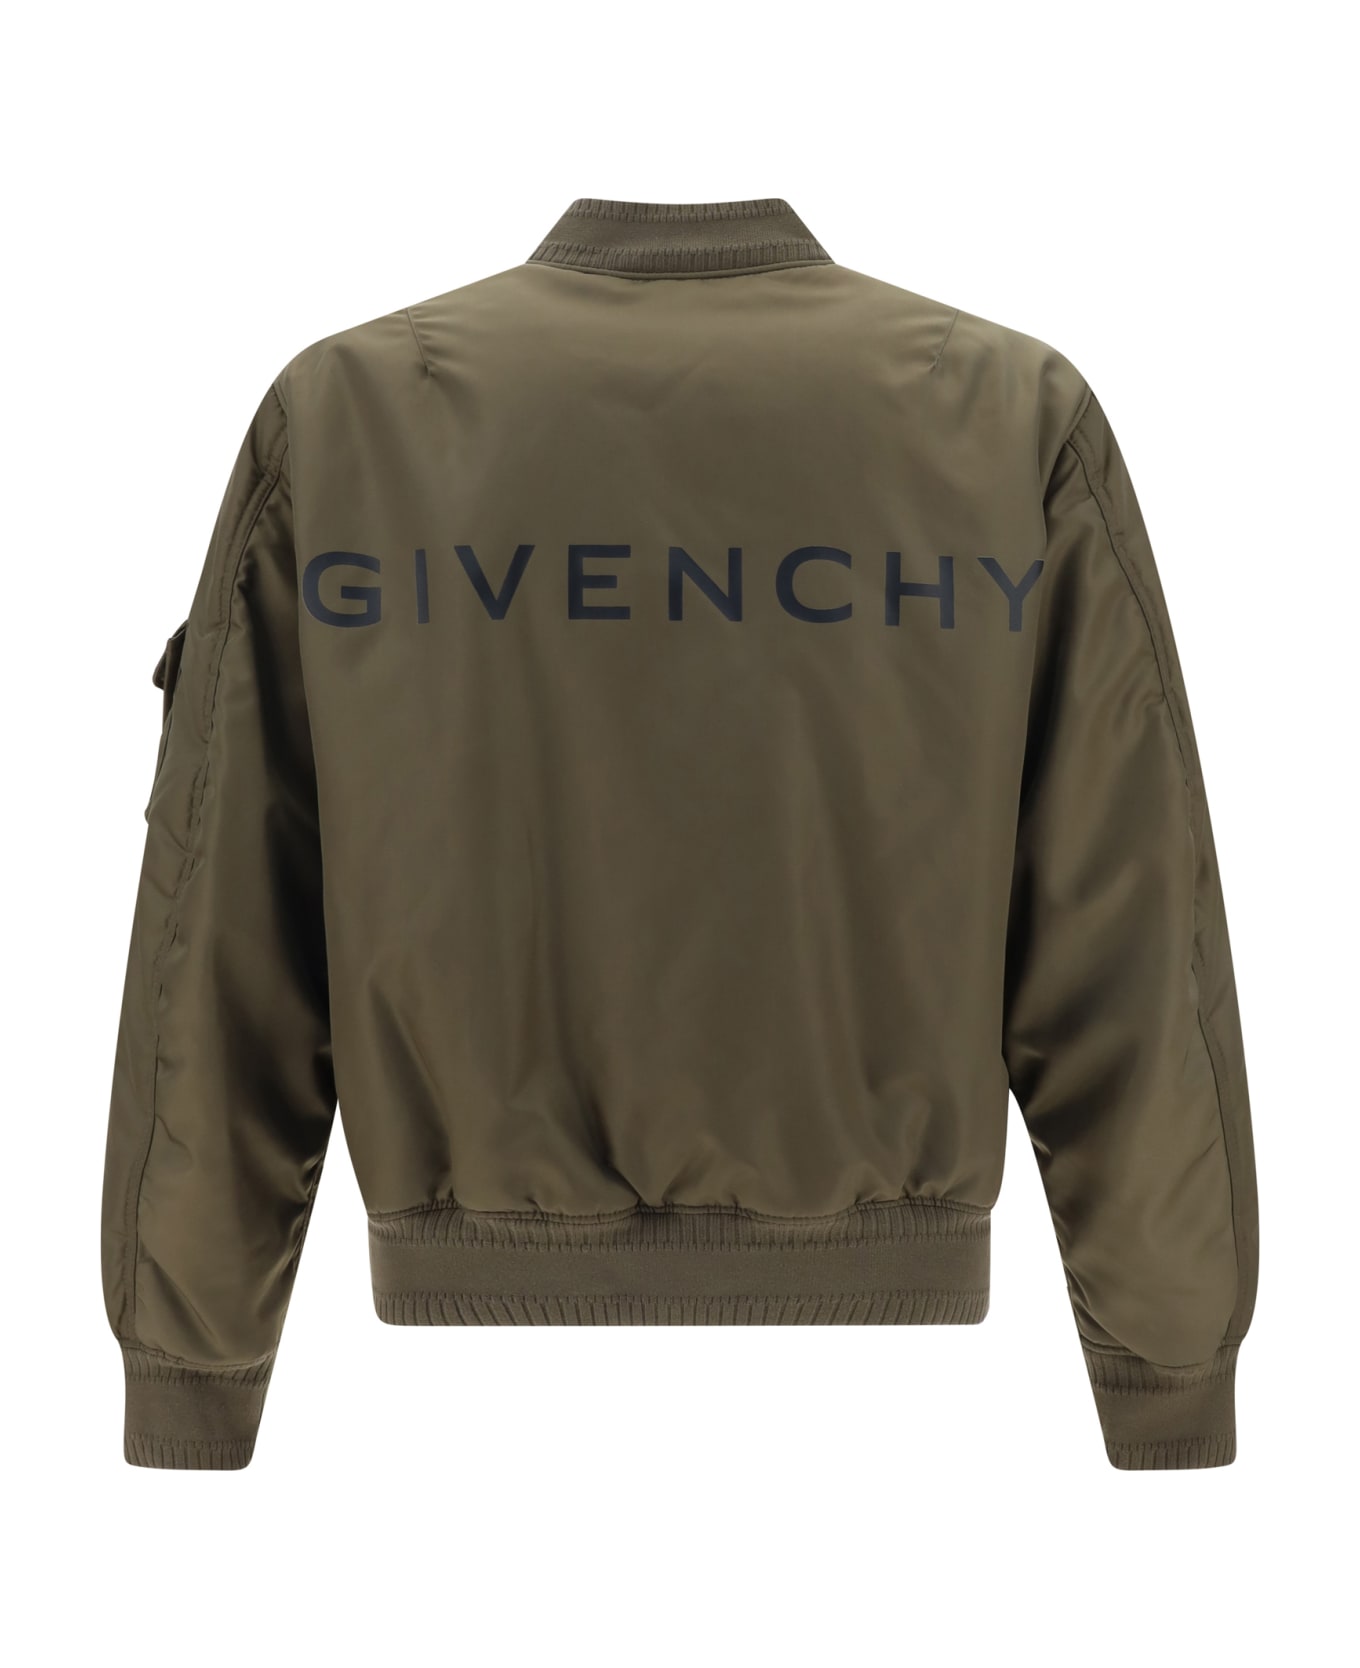 Givenchy Bomber Jacket - Khaki